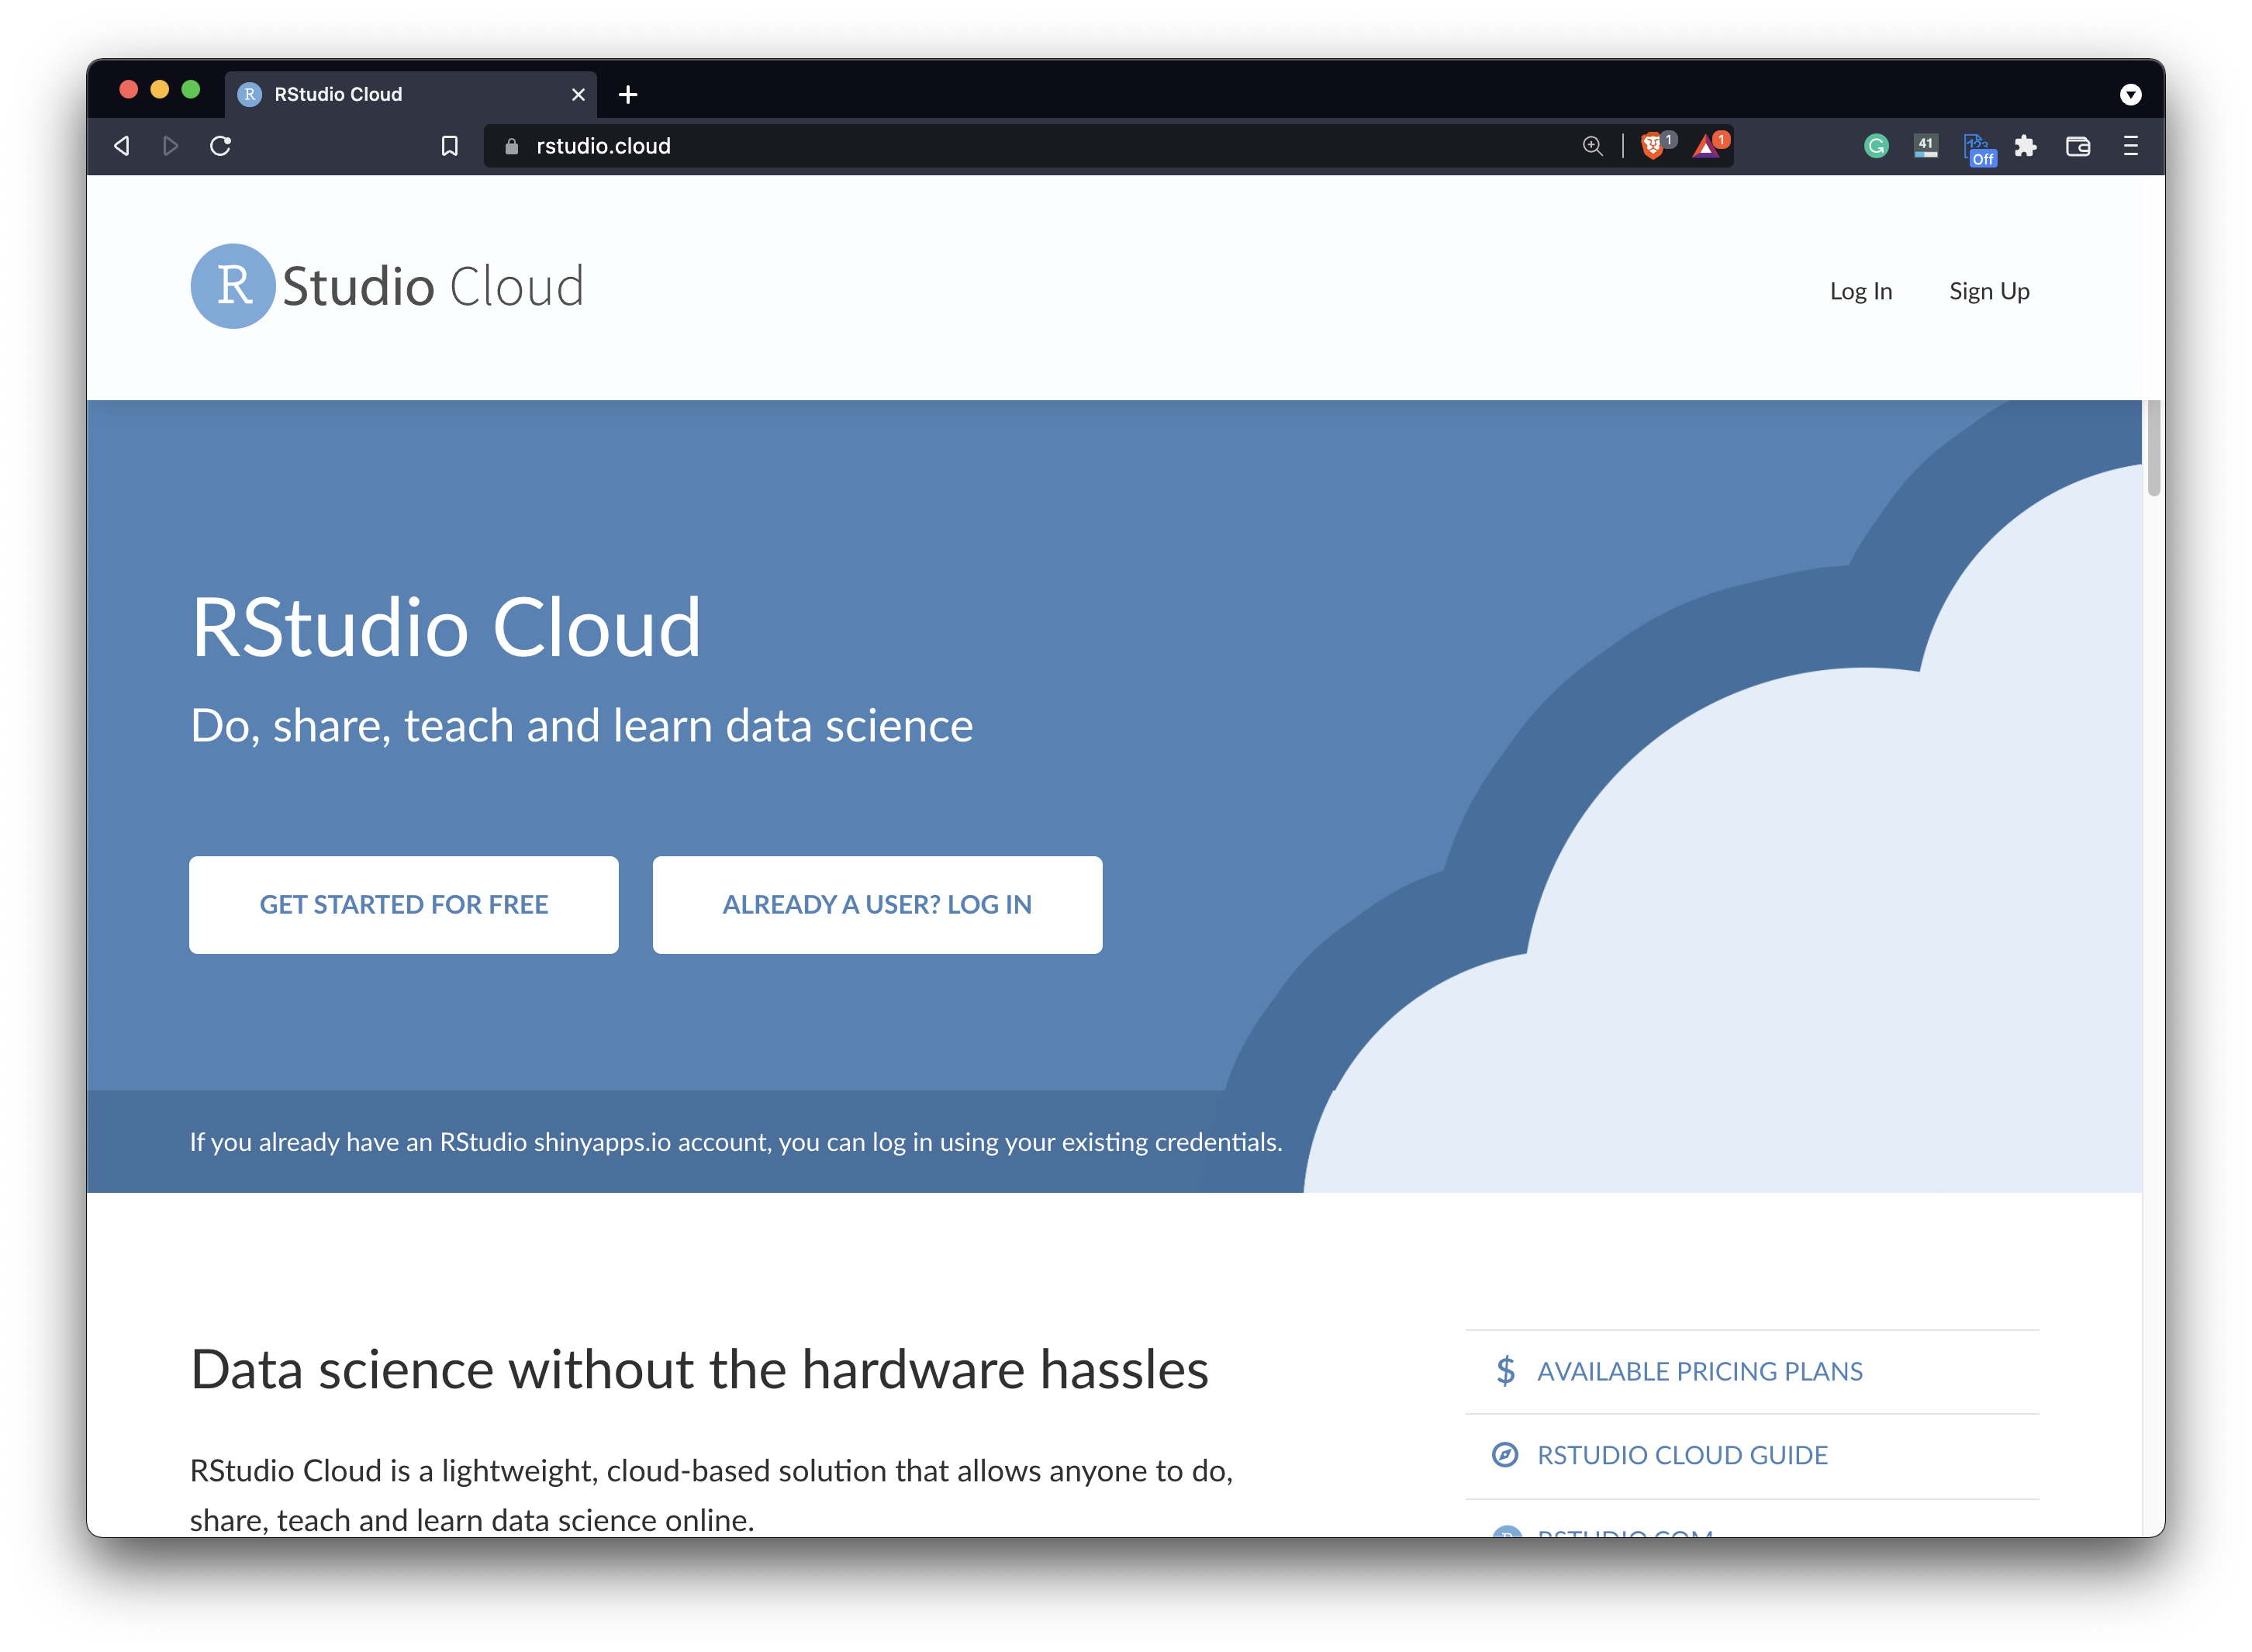 Image 2 - RStudio Cloud website